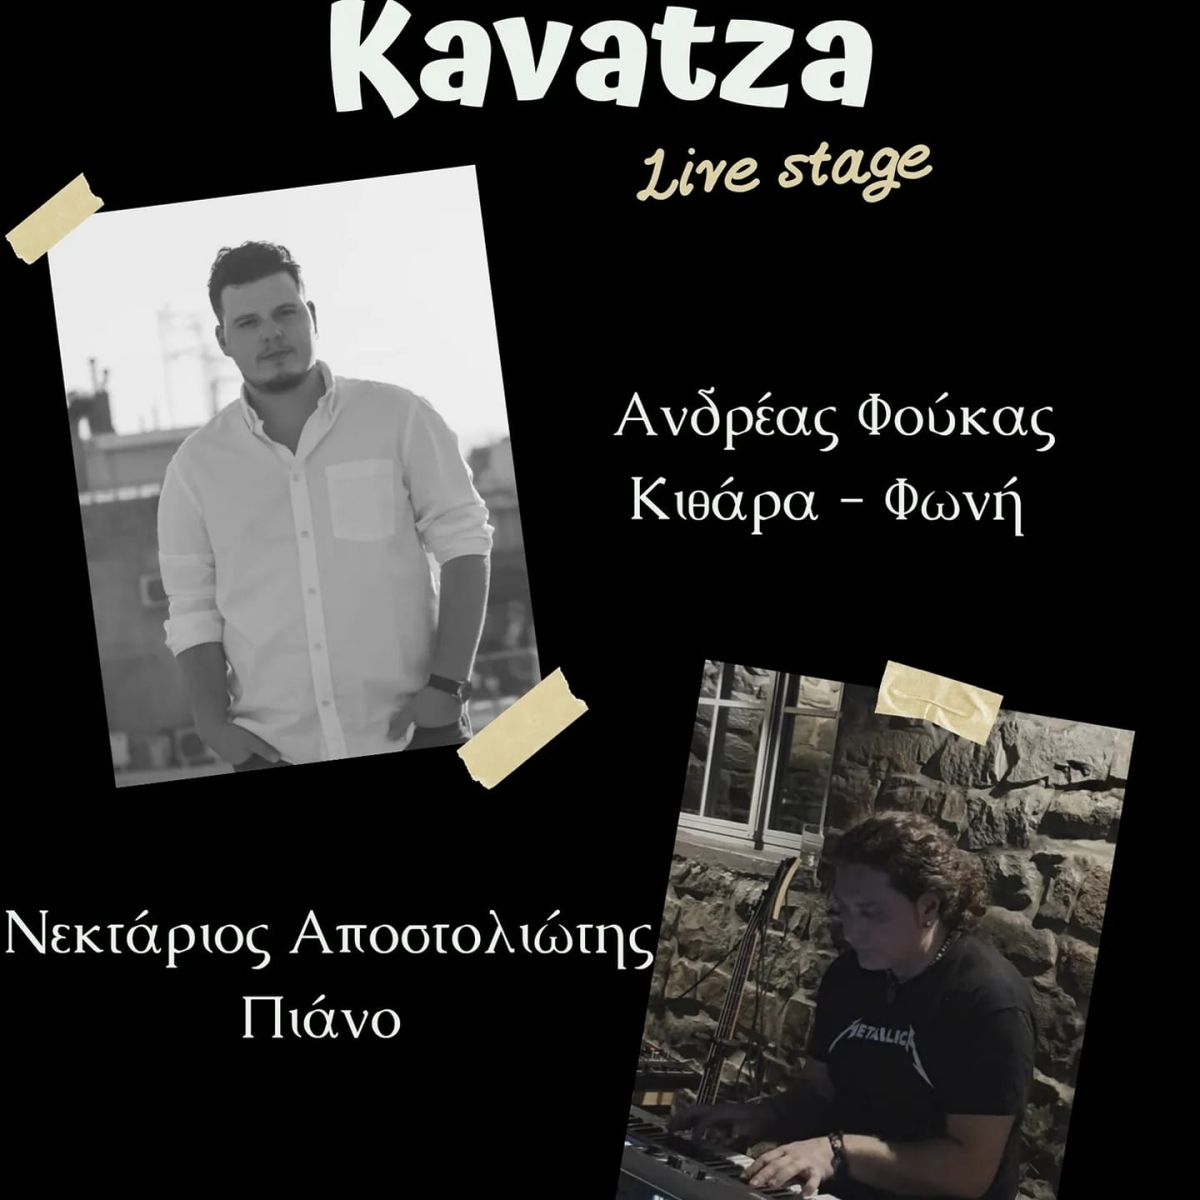 Ο Ανδρέας Φούκας (Φωνή, Κιθάρα) με τον Νεκτάριο Αποστολιώτη (πιάνο) στο Kavatza Live Stage (Σαβ 5/11/2022)